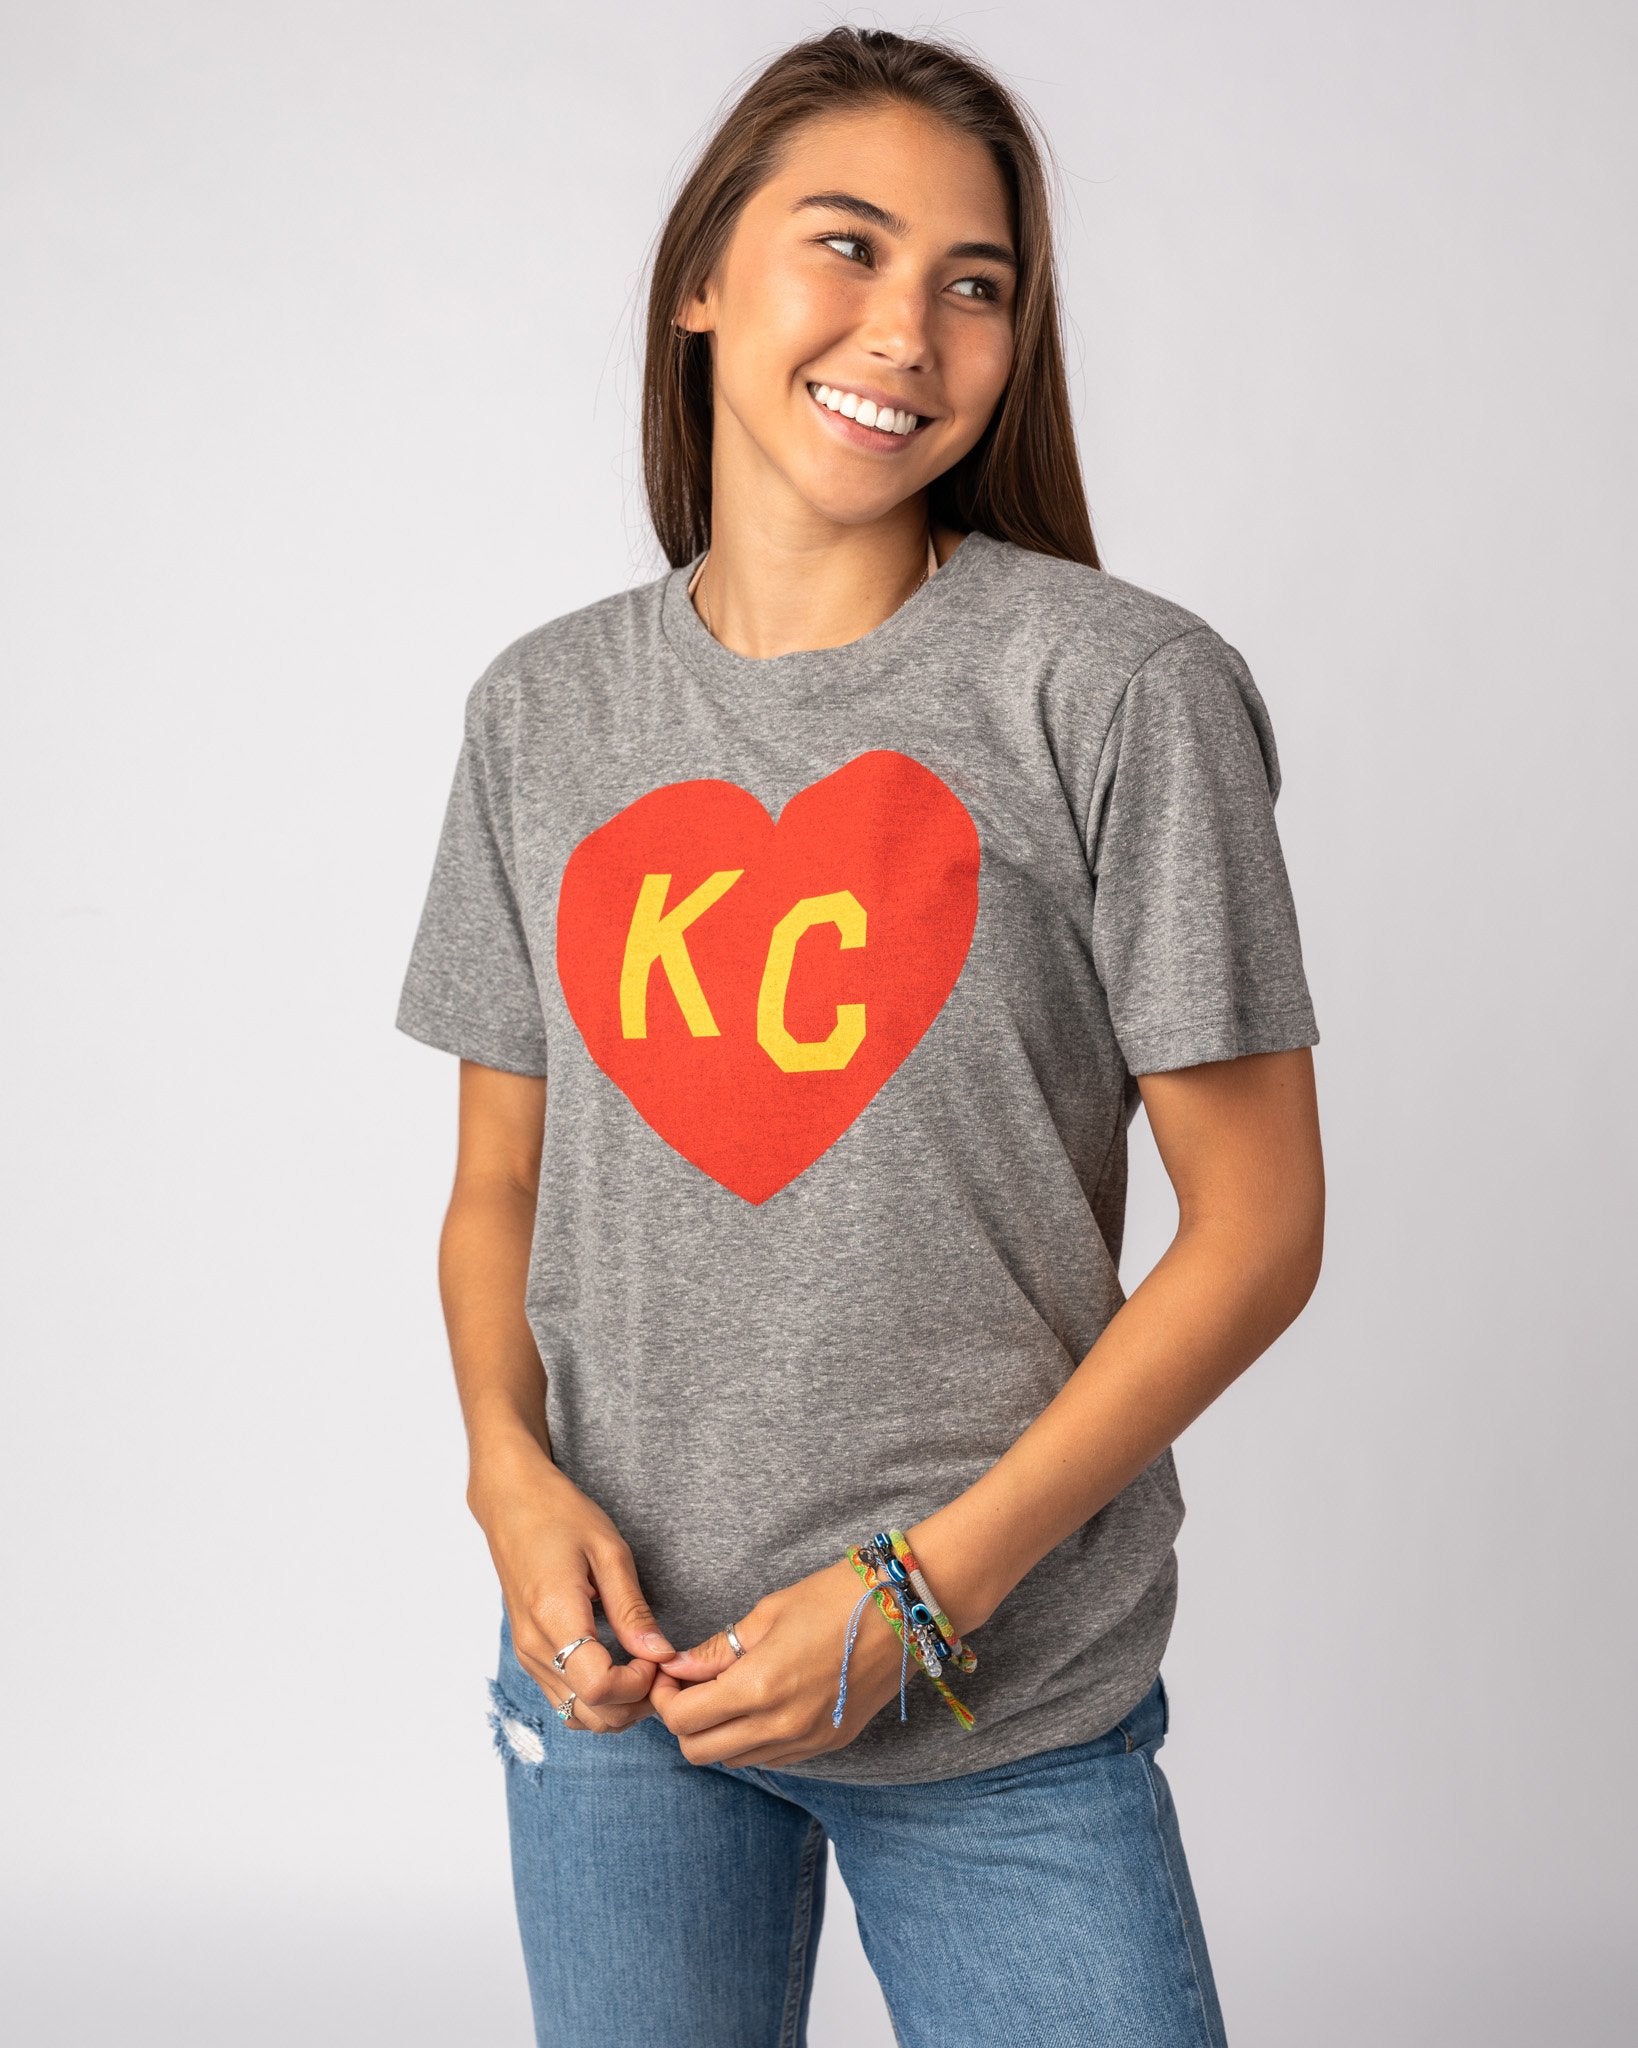 love kc shirts